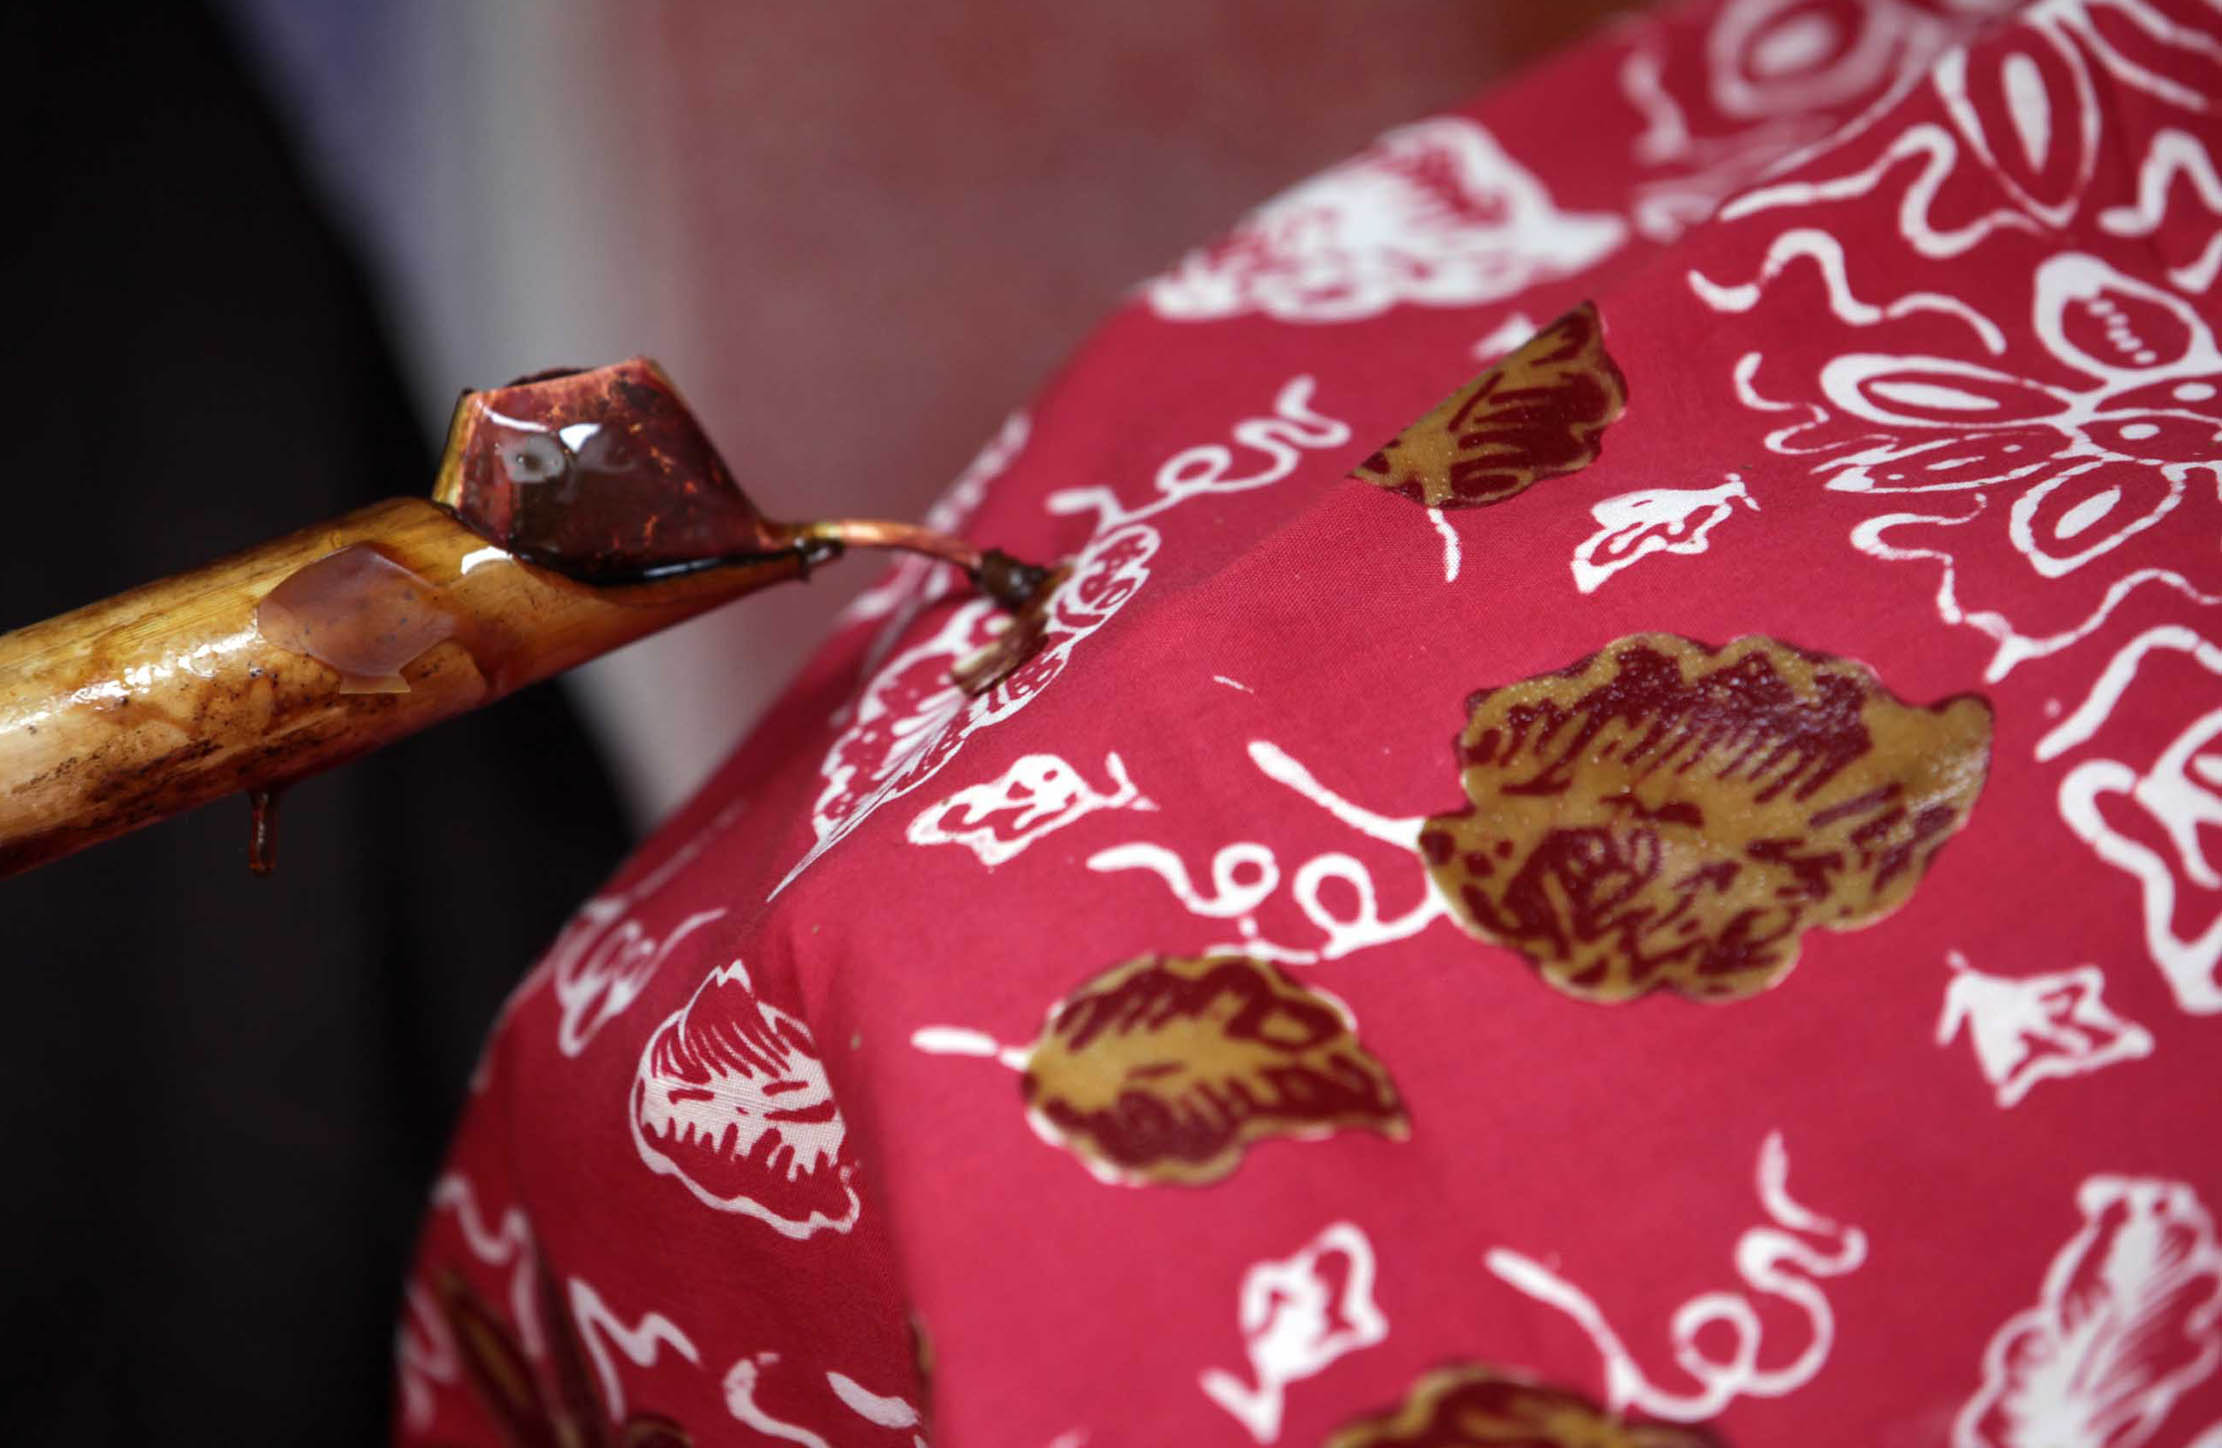 Perajin mengerjakan pembuatan batik tulis dengan motif khas Bogor di Kampung Batik, Neglasari, Cibuluh, Kota Bogor, Jawa Barat. Kamis 5 Agustus 2021. Foto : Panji Asmoro/TrenAsia